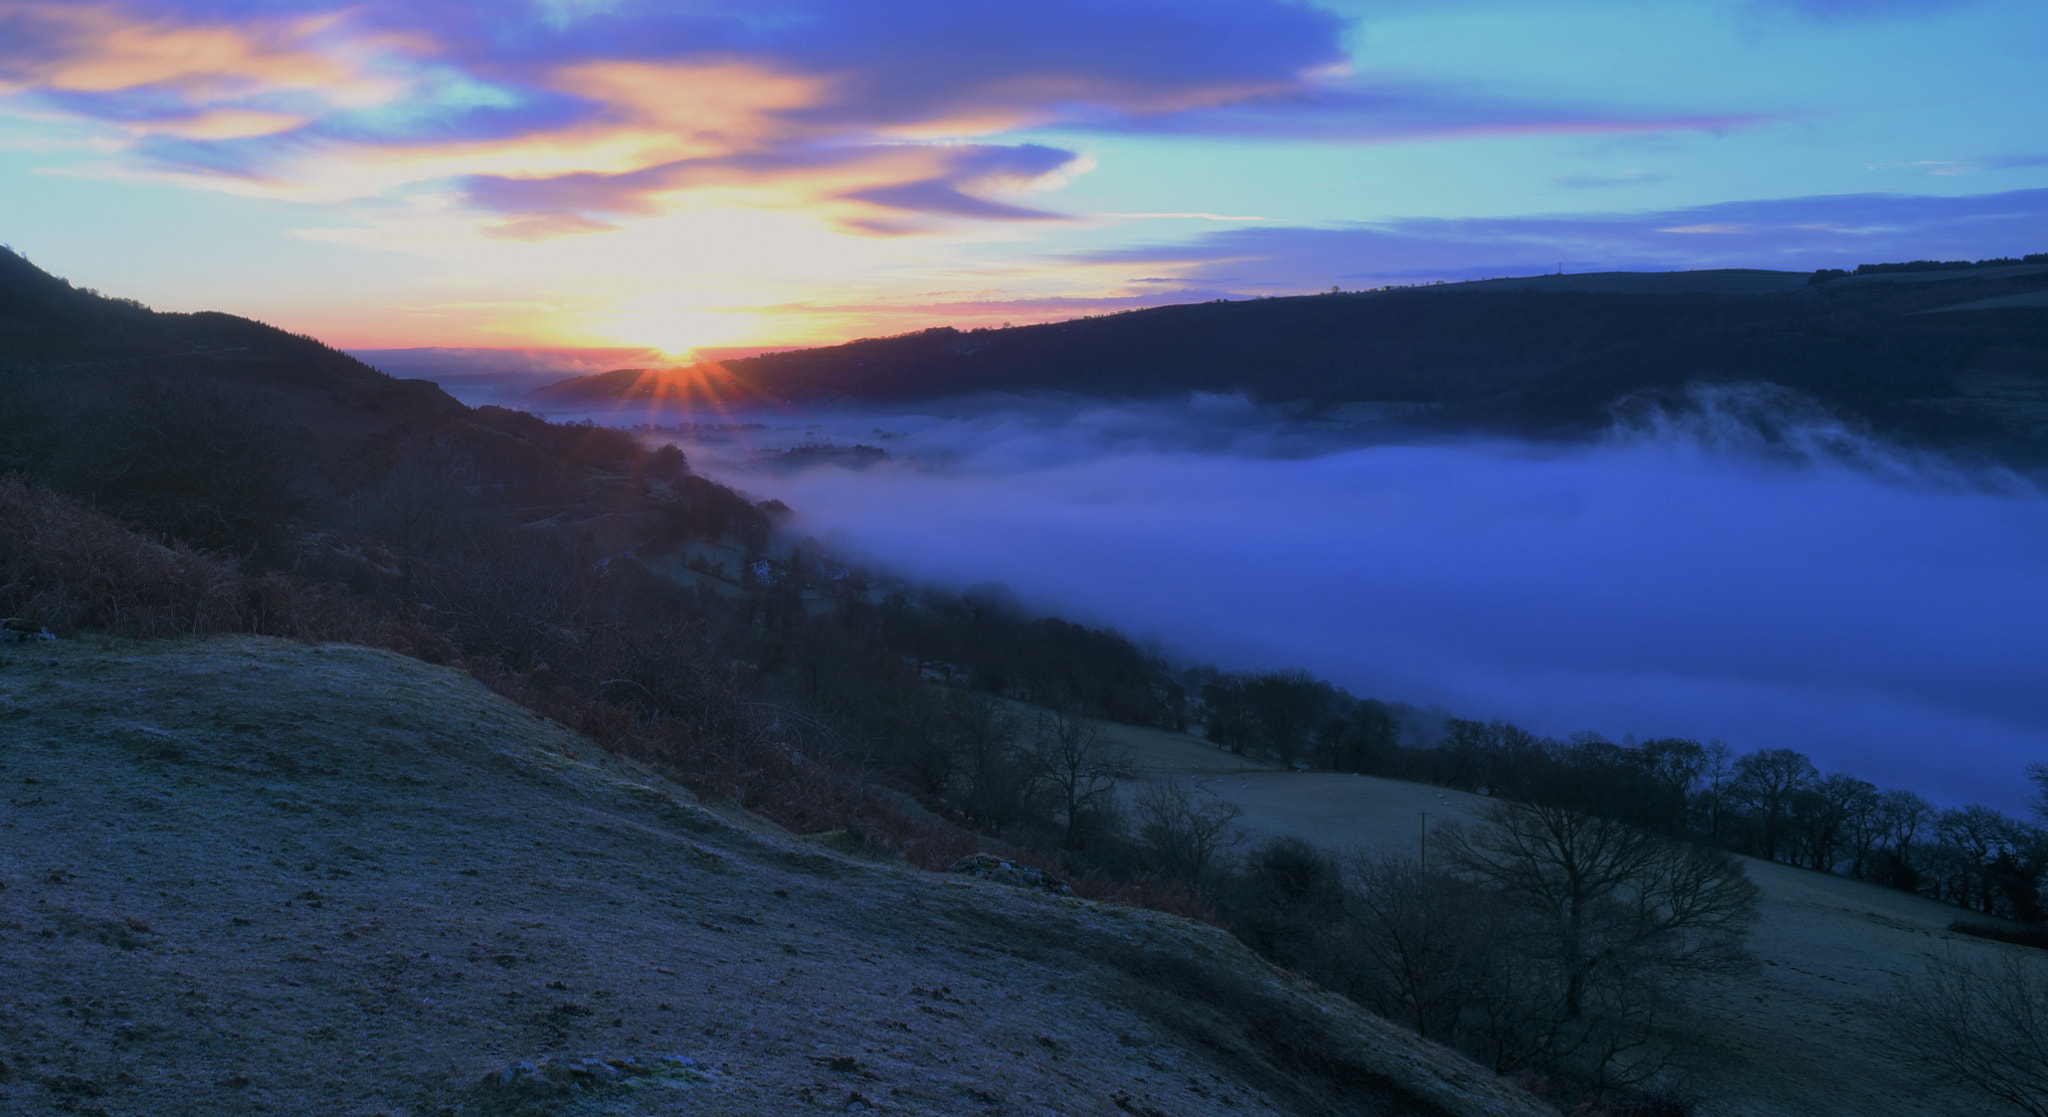 AF Nikkor 20mm f/2.8 sample photo. Llangollen sunrise - misty valley photography